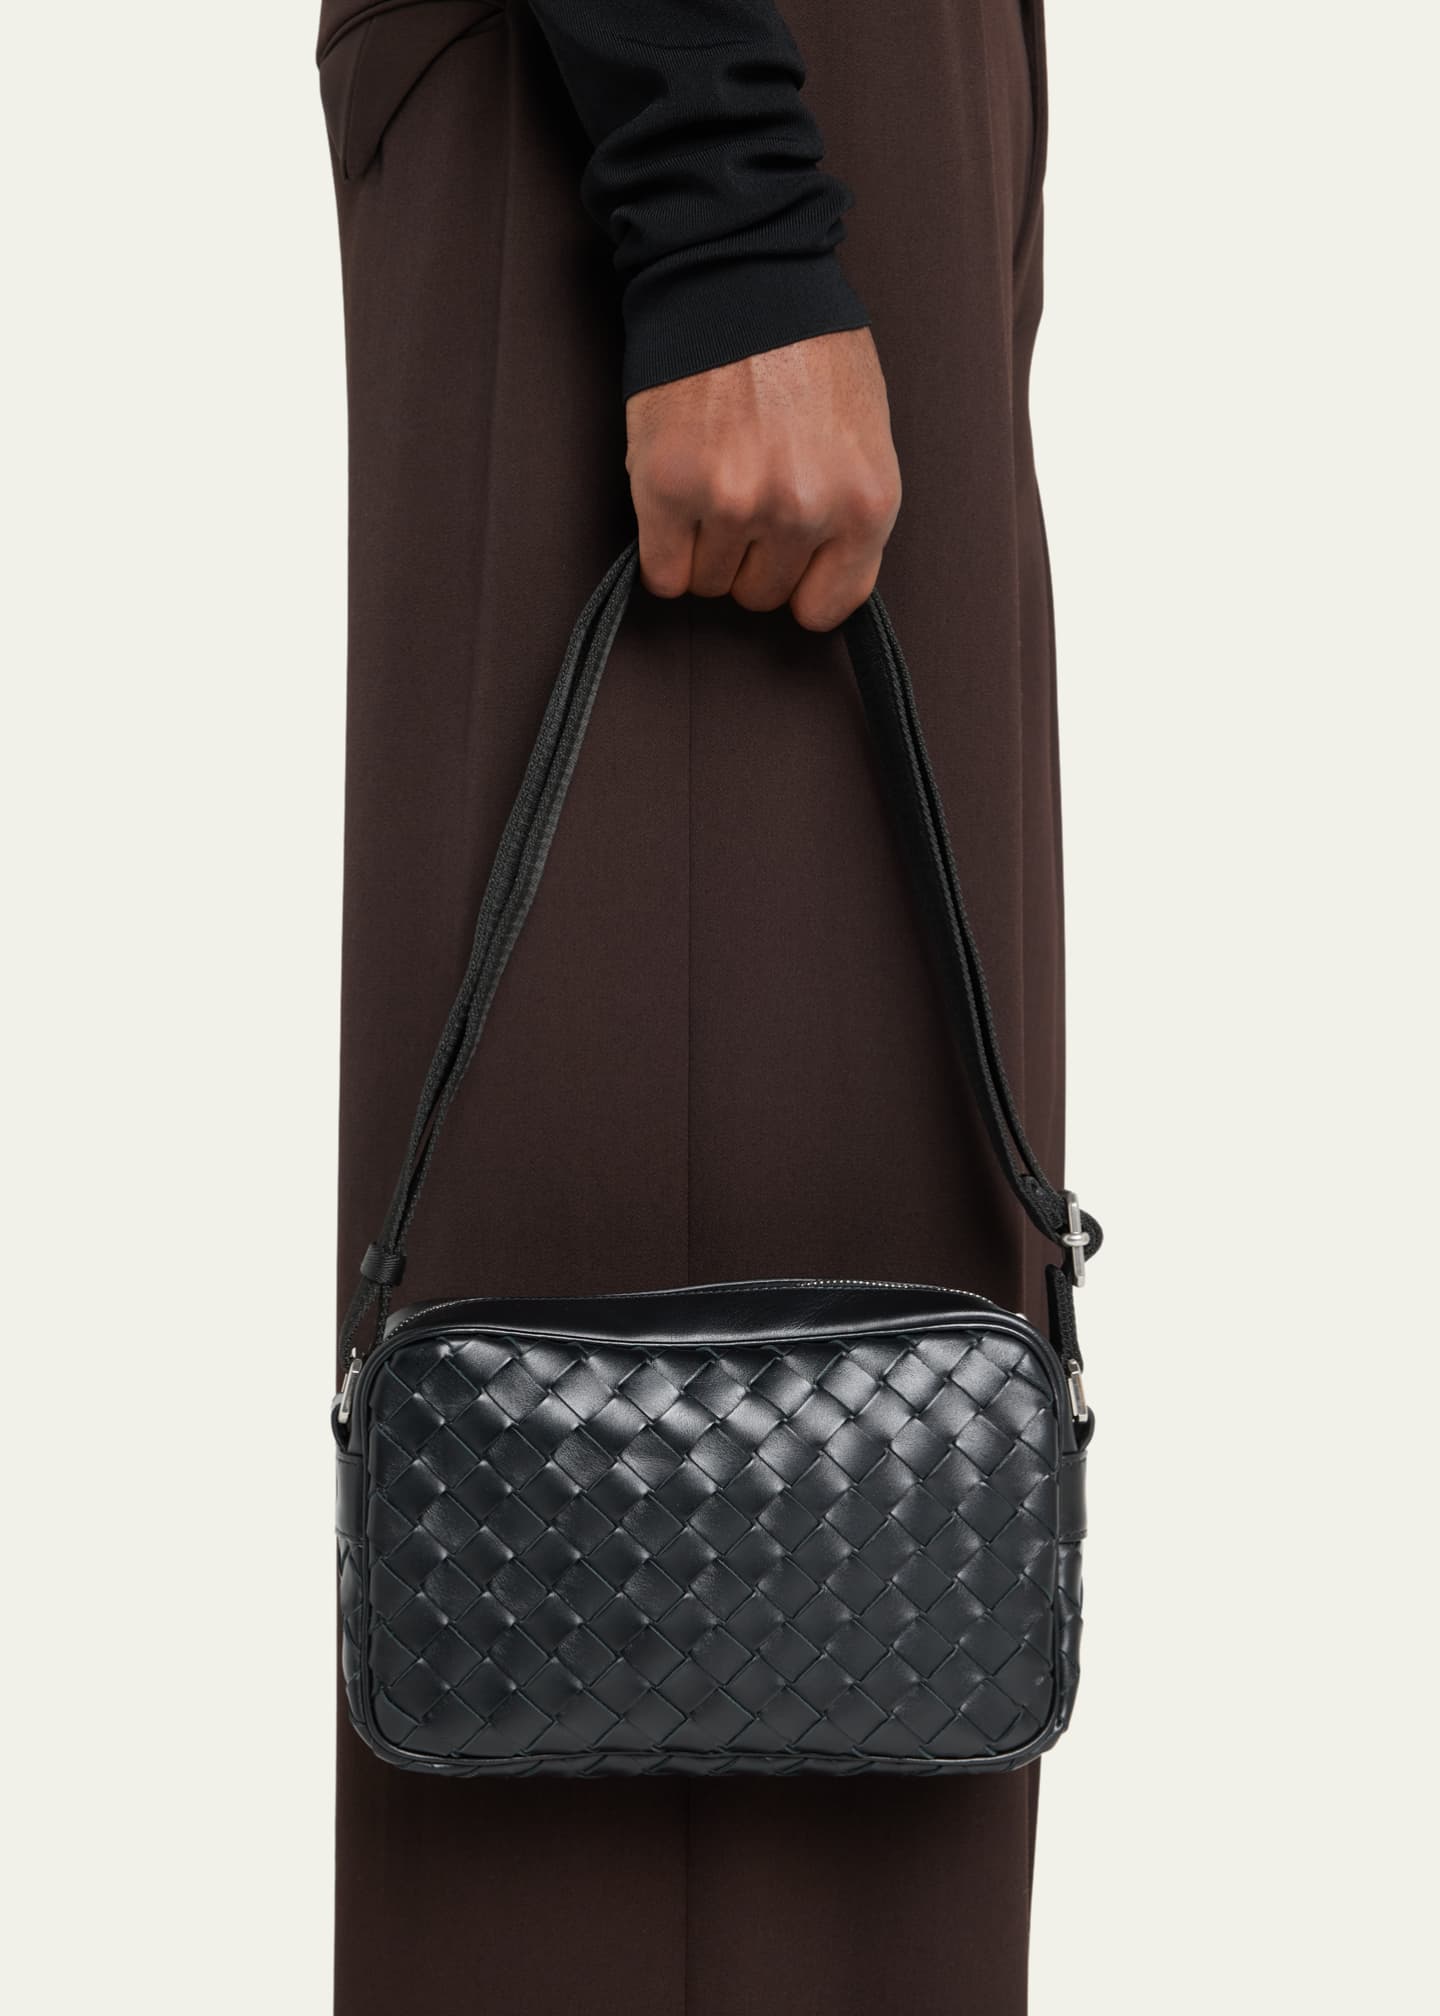 Bottega Veneta Men's Mini Intrecciato Cross-body Bag